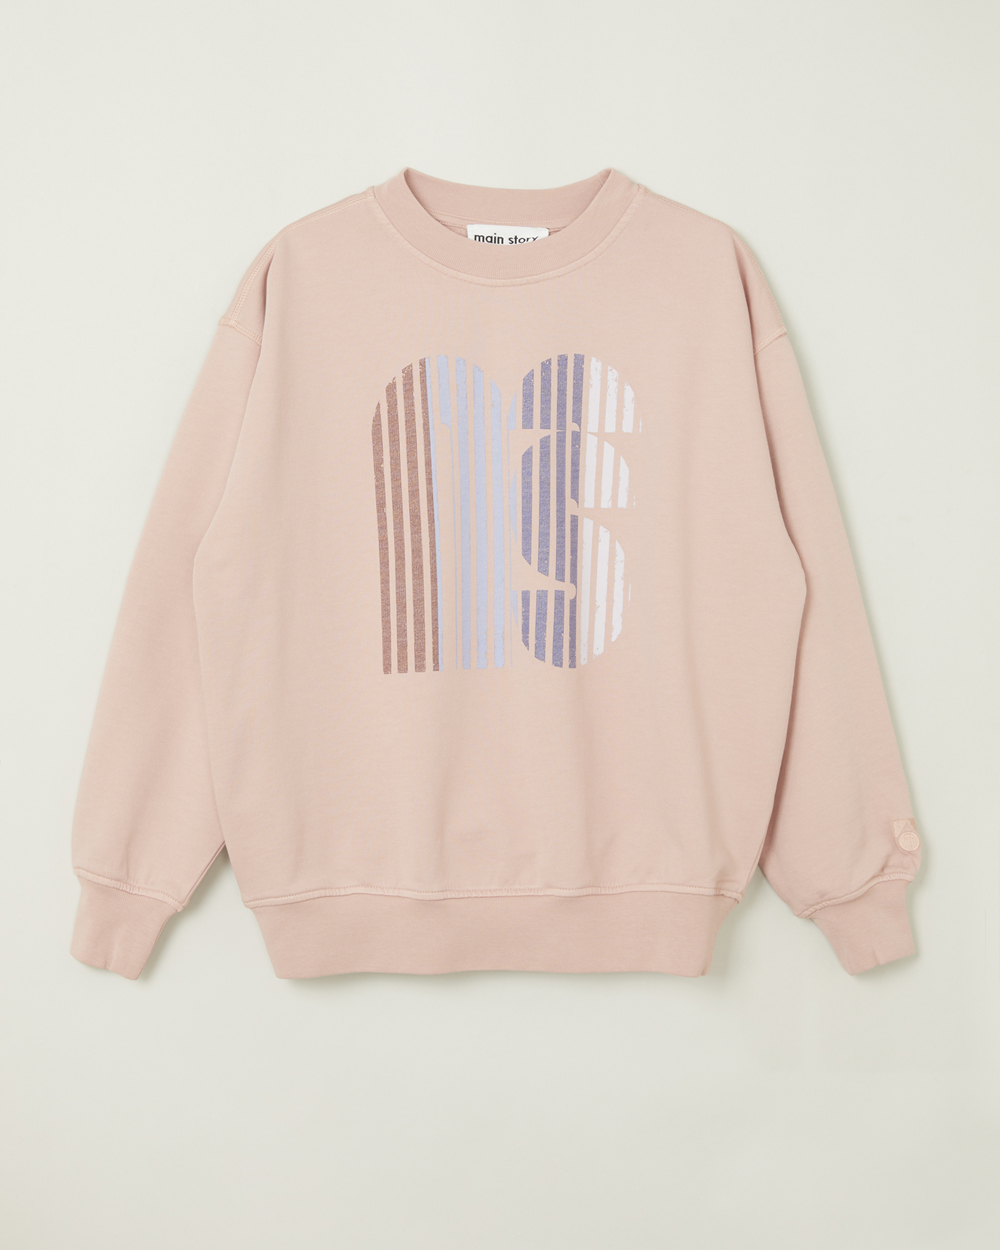 [MAINSTORY]Oversized Sweatshirt - Misty Rose [14Y]